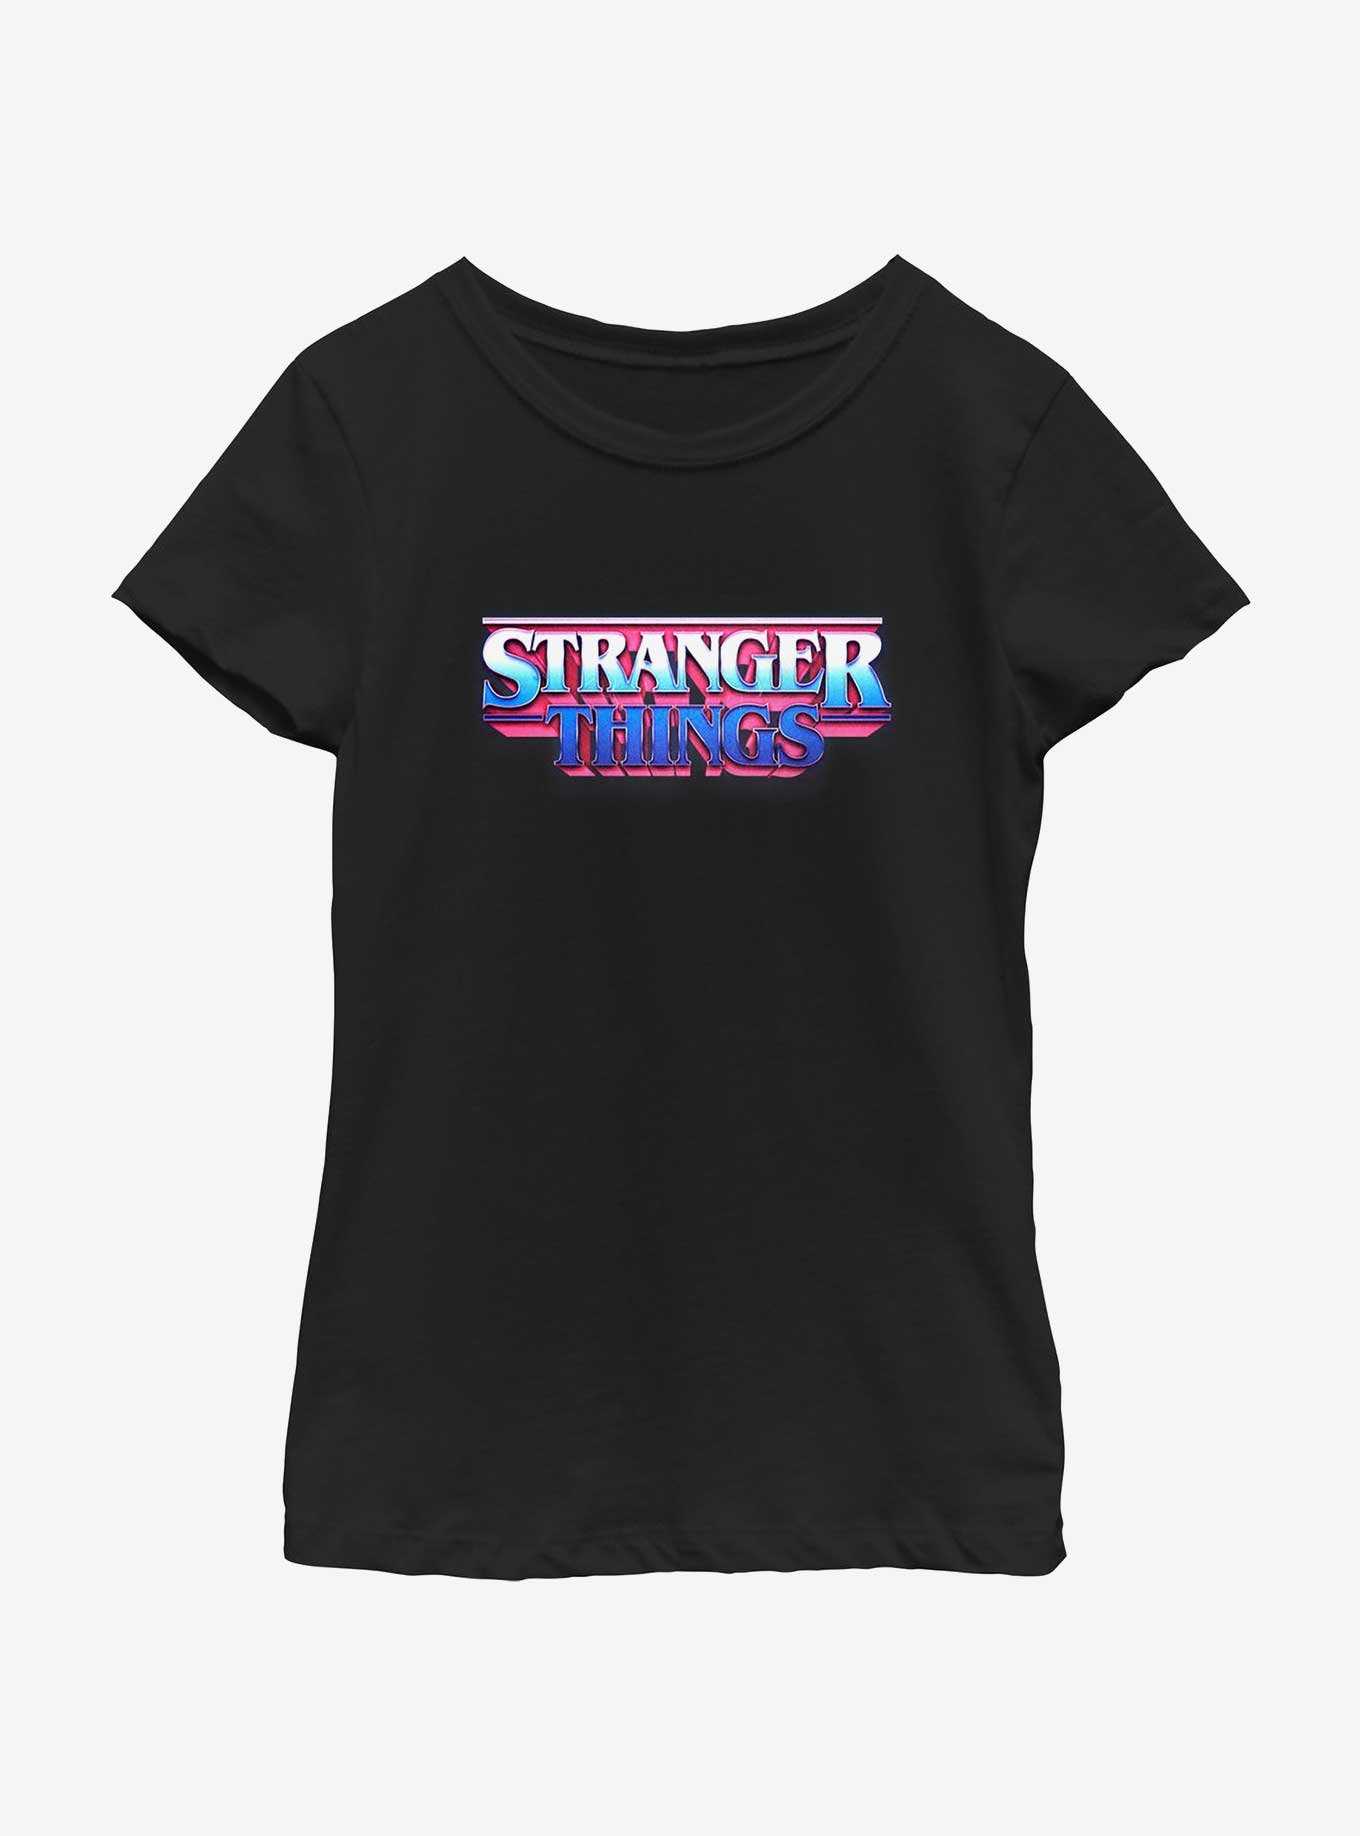 Stranger Things Retro Logo Youth Girls T-Shirt, , hi-res